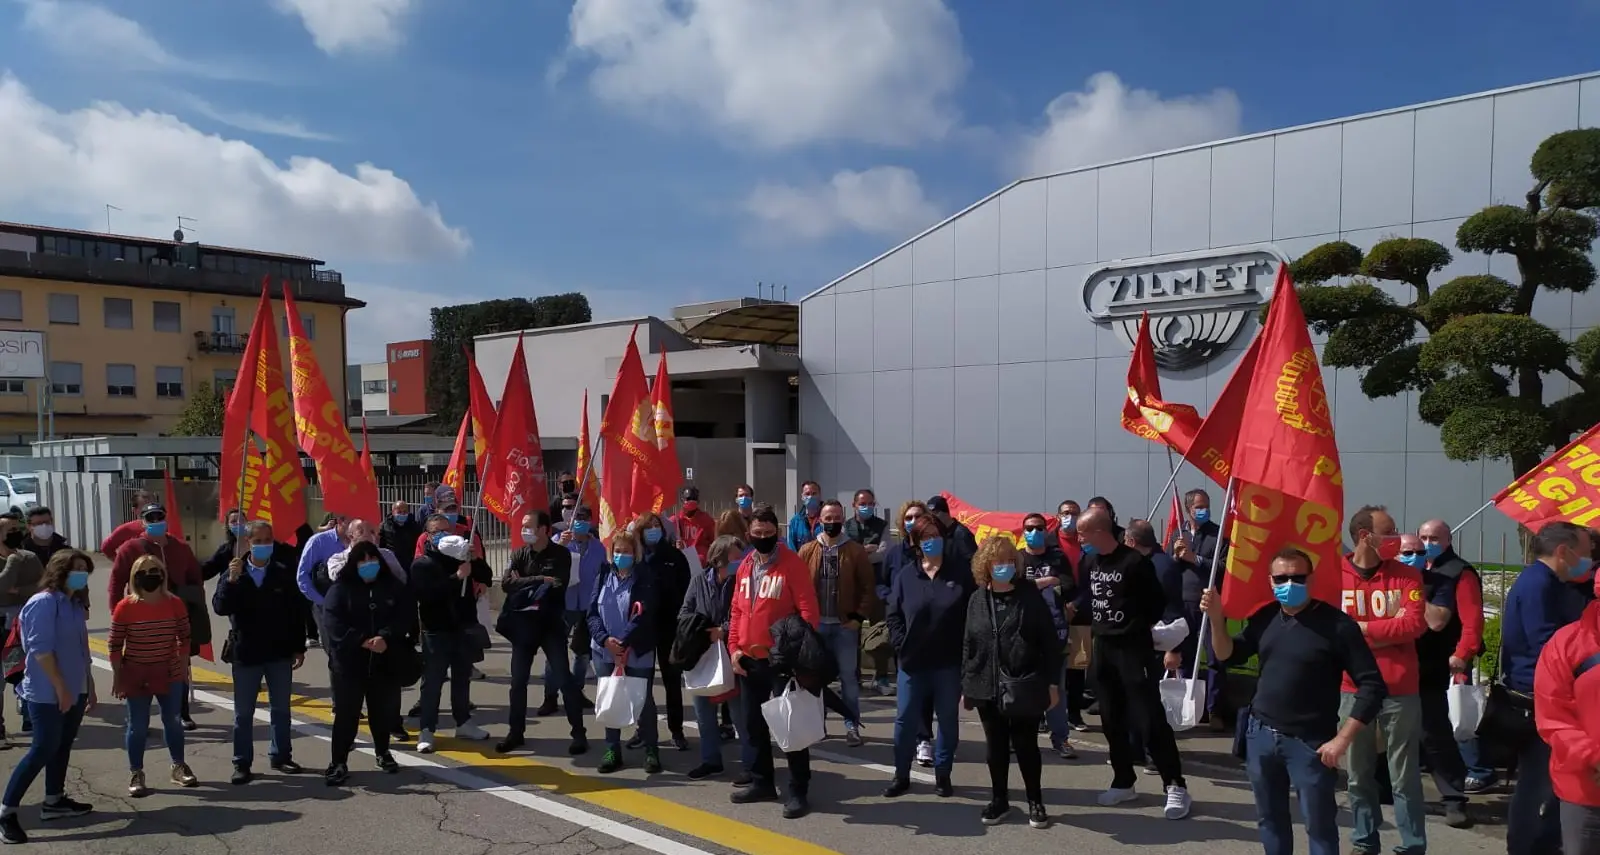 Zilmet Padova, sciopero riuscito contro gli insulti del padrone